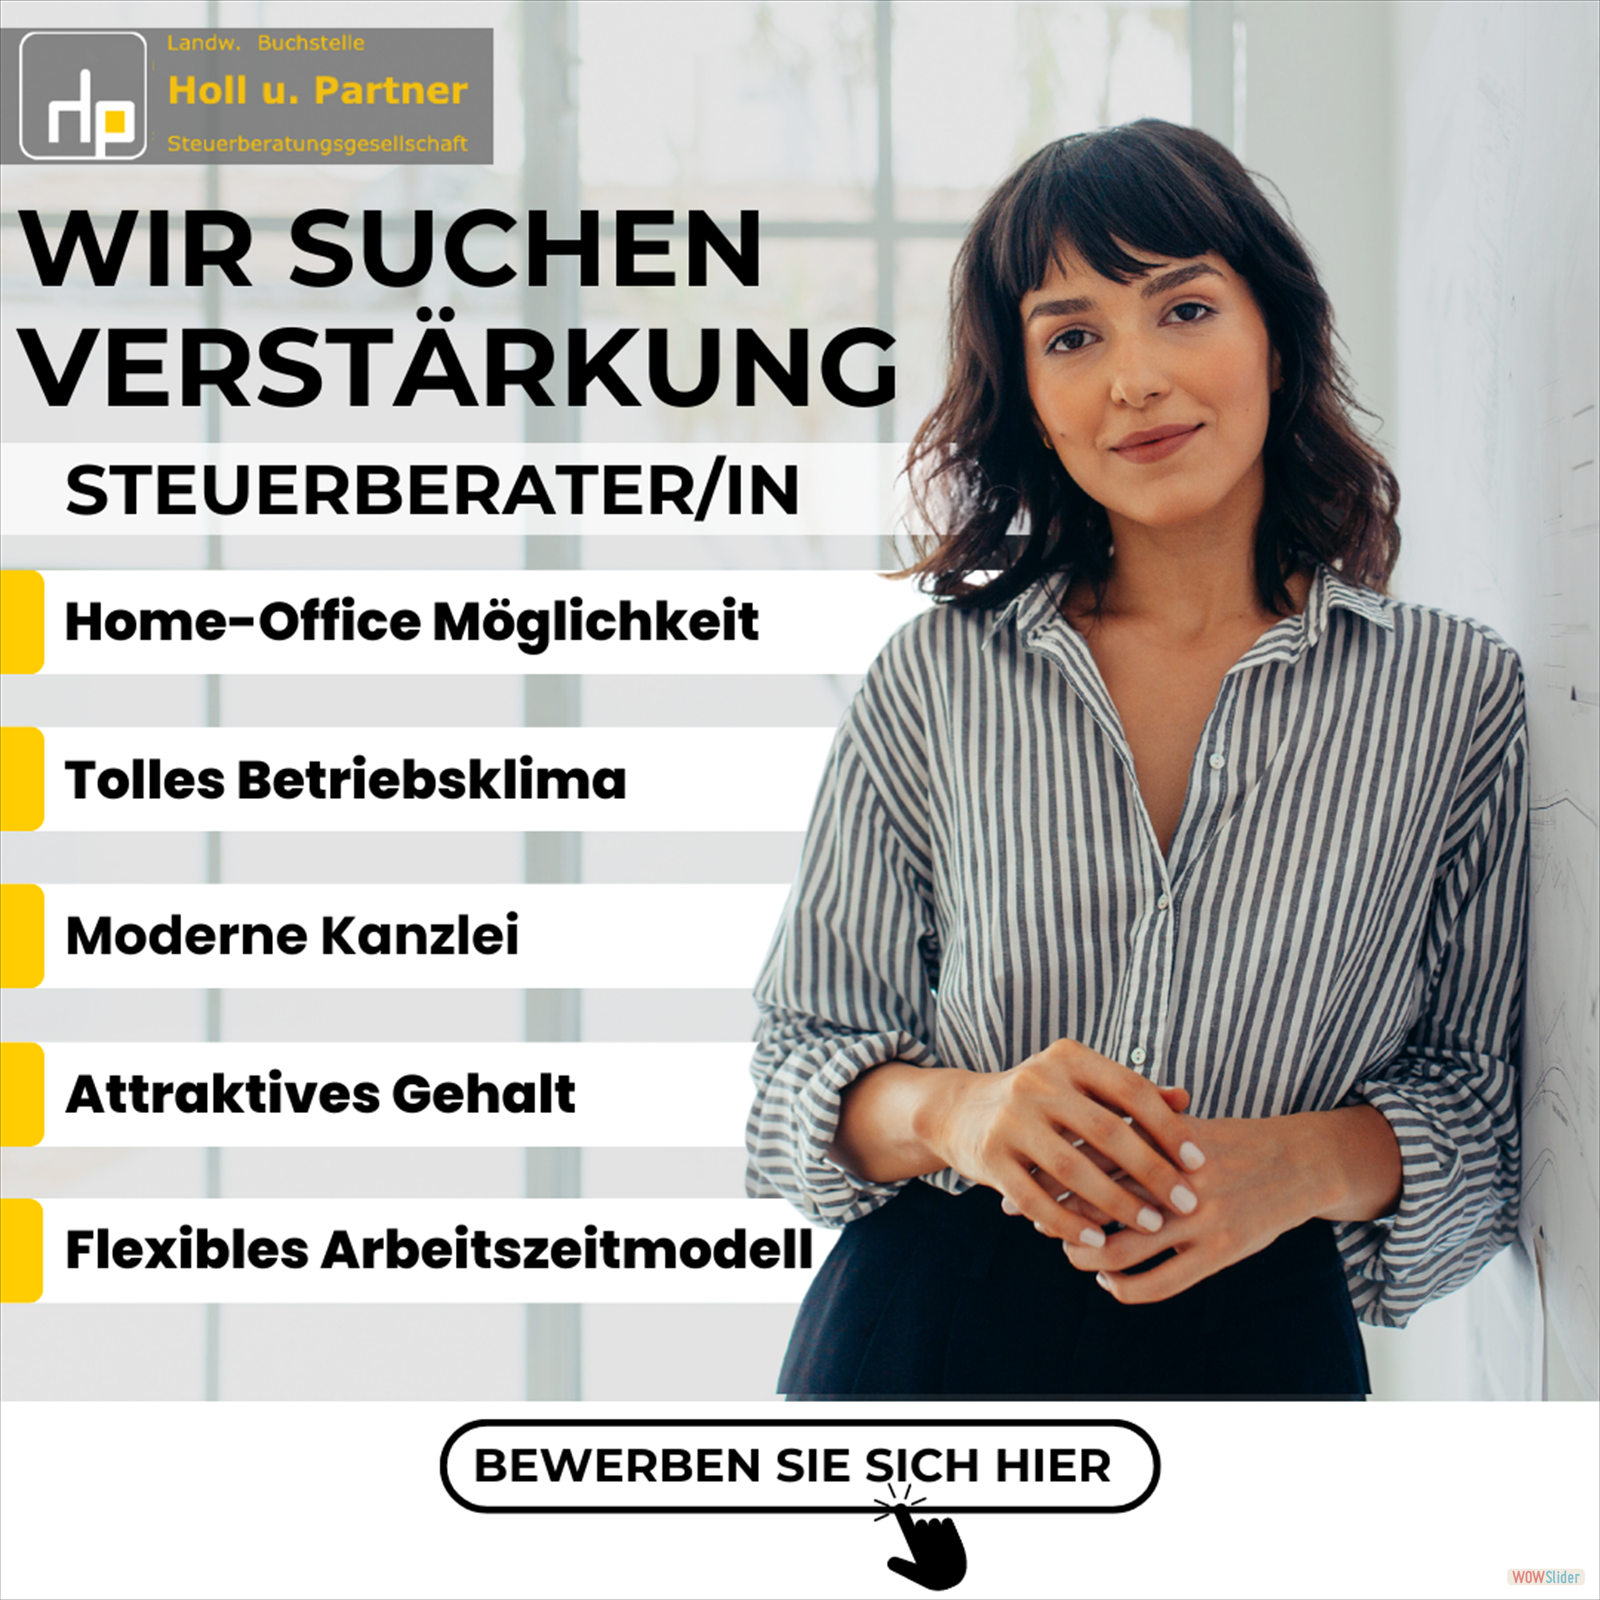 Dieter Holl _ Partner Steuerberatungsgesellschaft 4